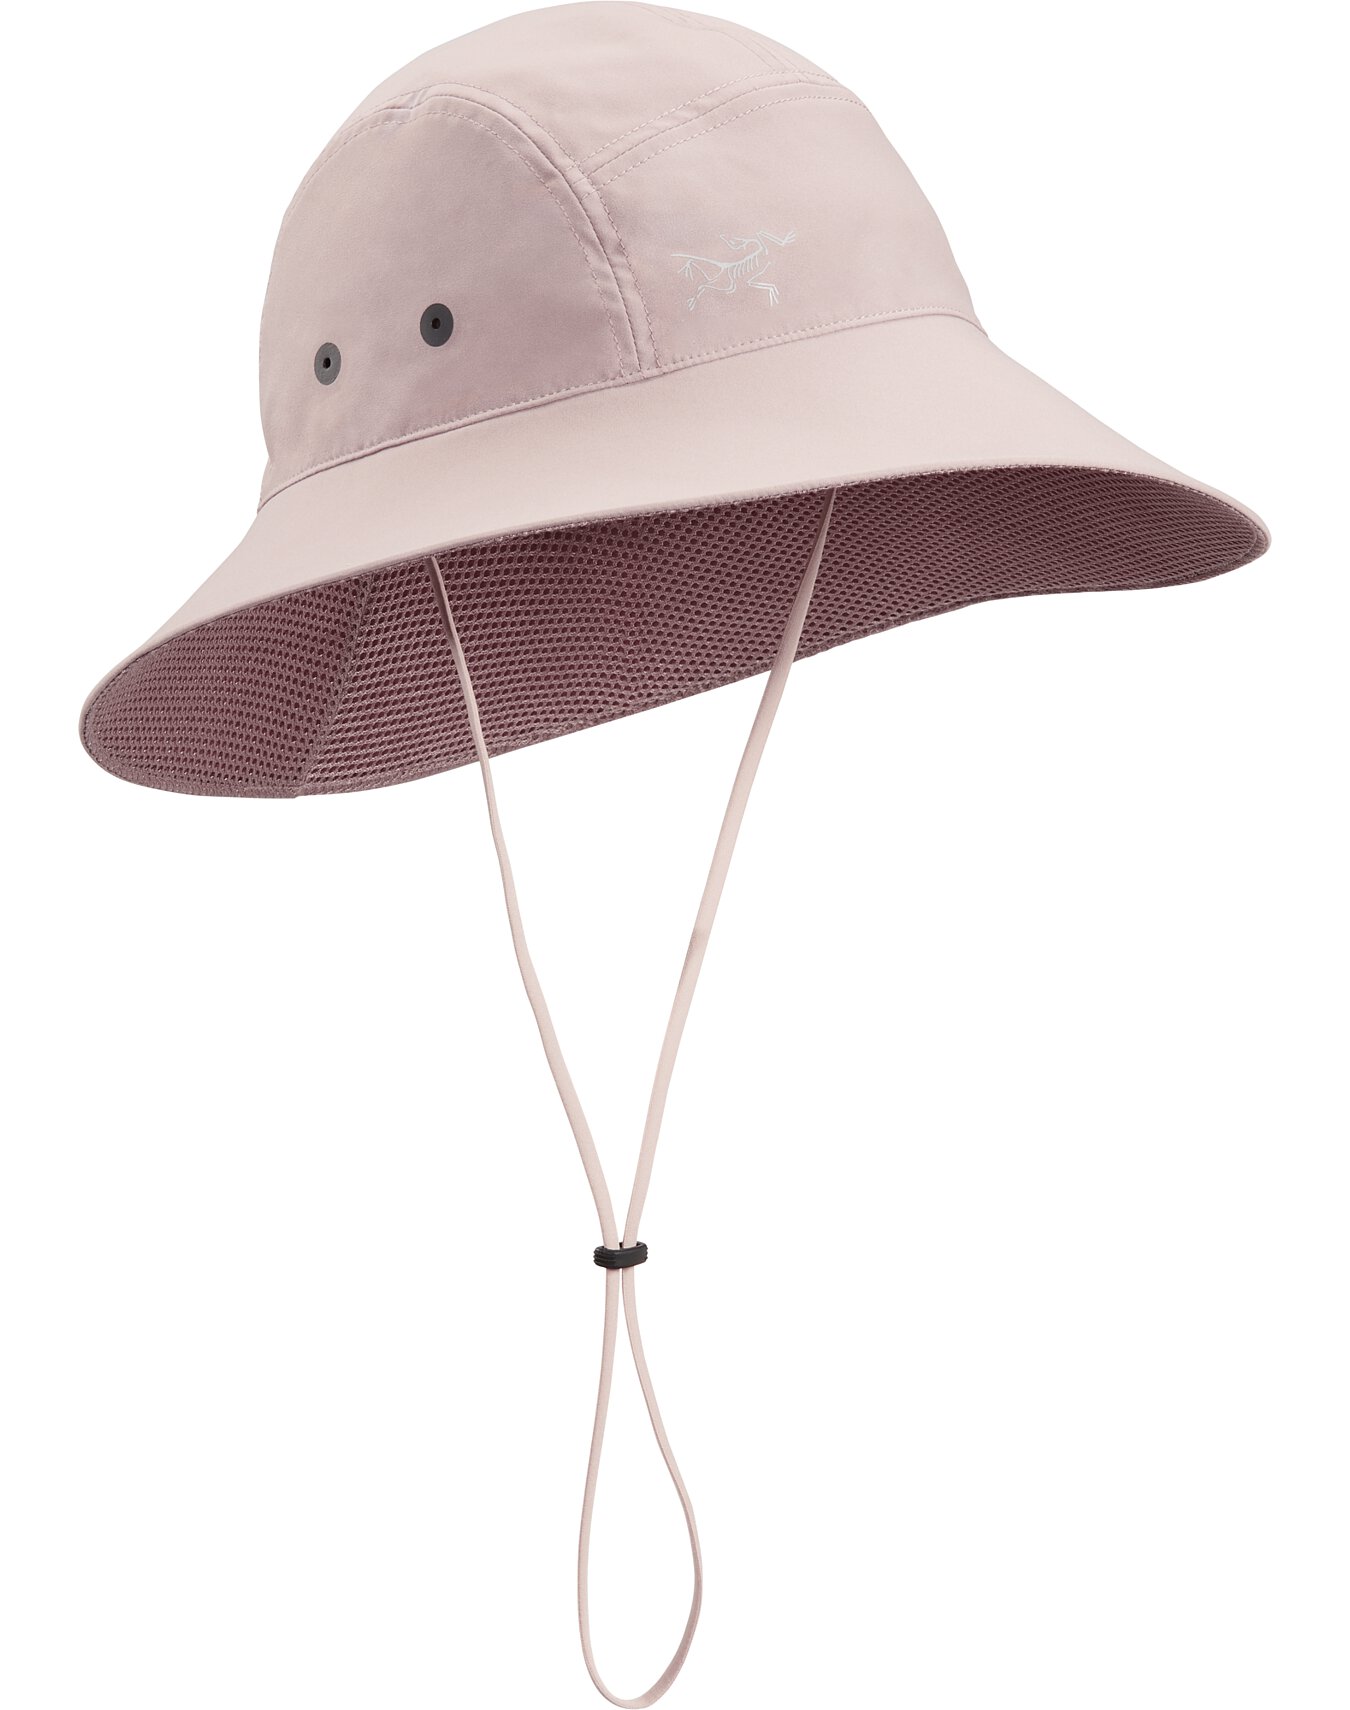 Sinsola Hat